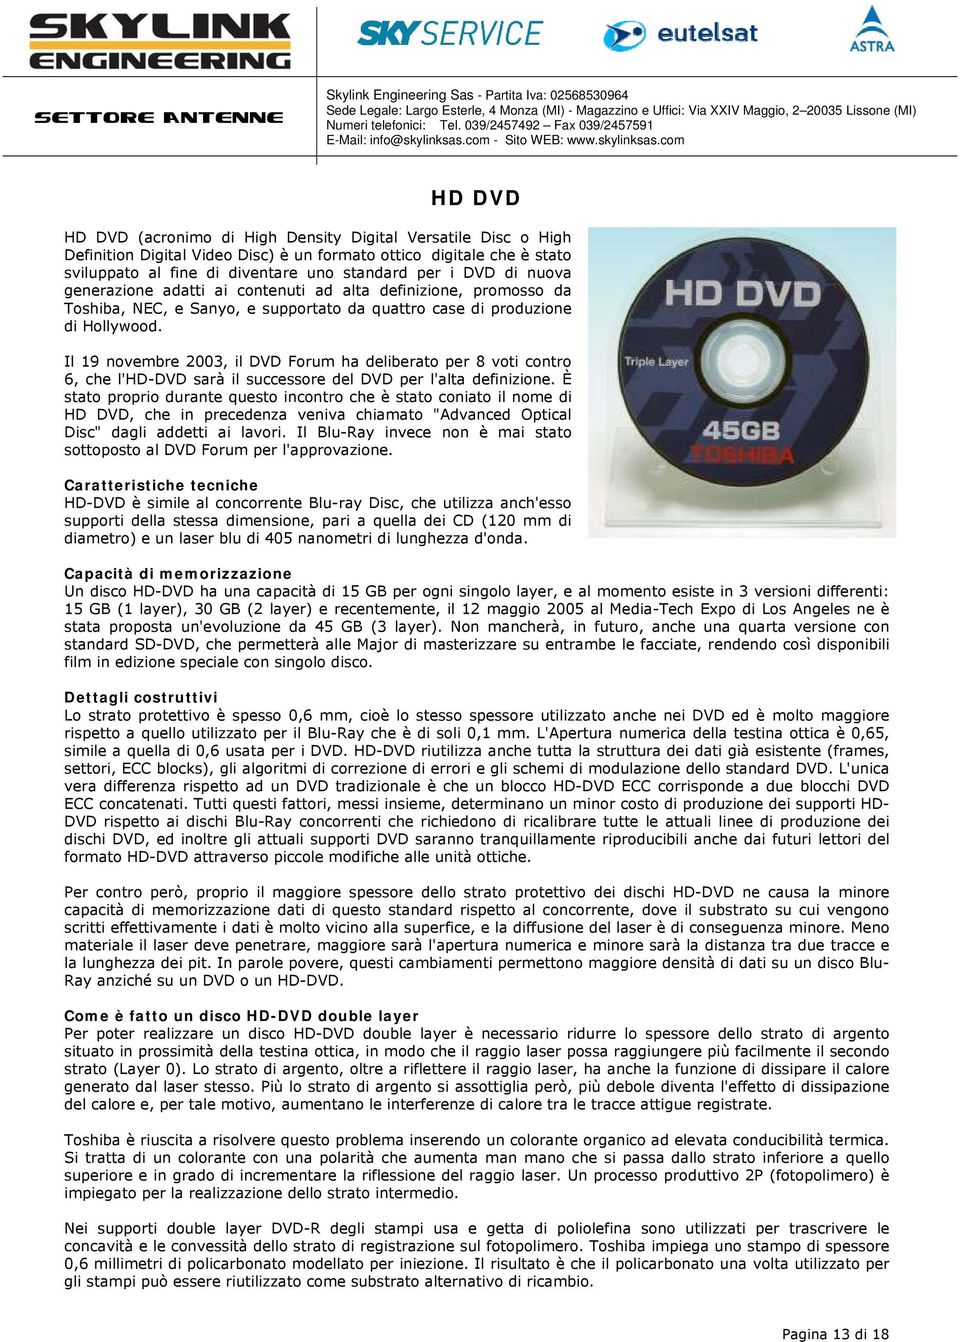 Il 19 novembre 2003, il DVD Forum ha deliberato per 8 voti contro 6, che l'hd-dvd sarà il successore del DVD per l'alta definizione.